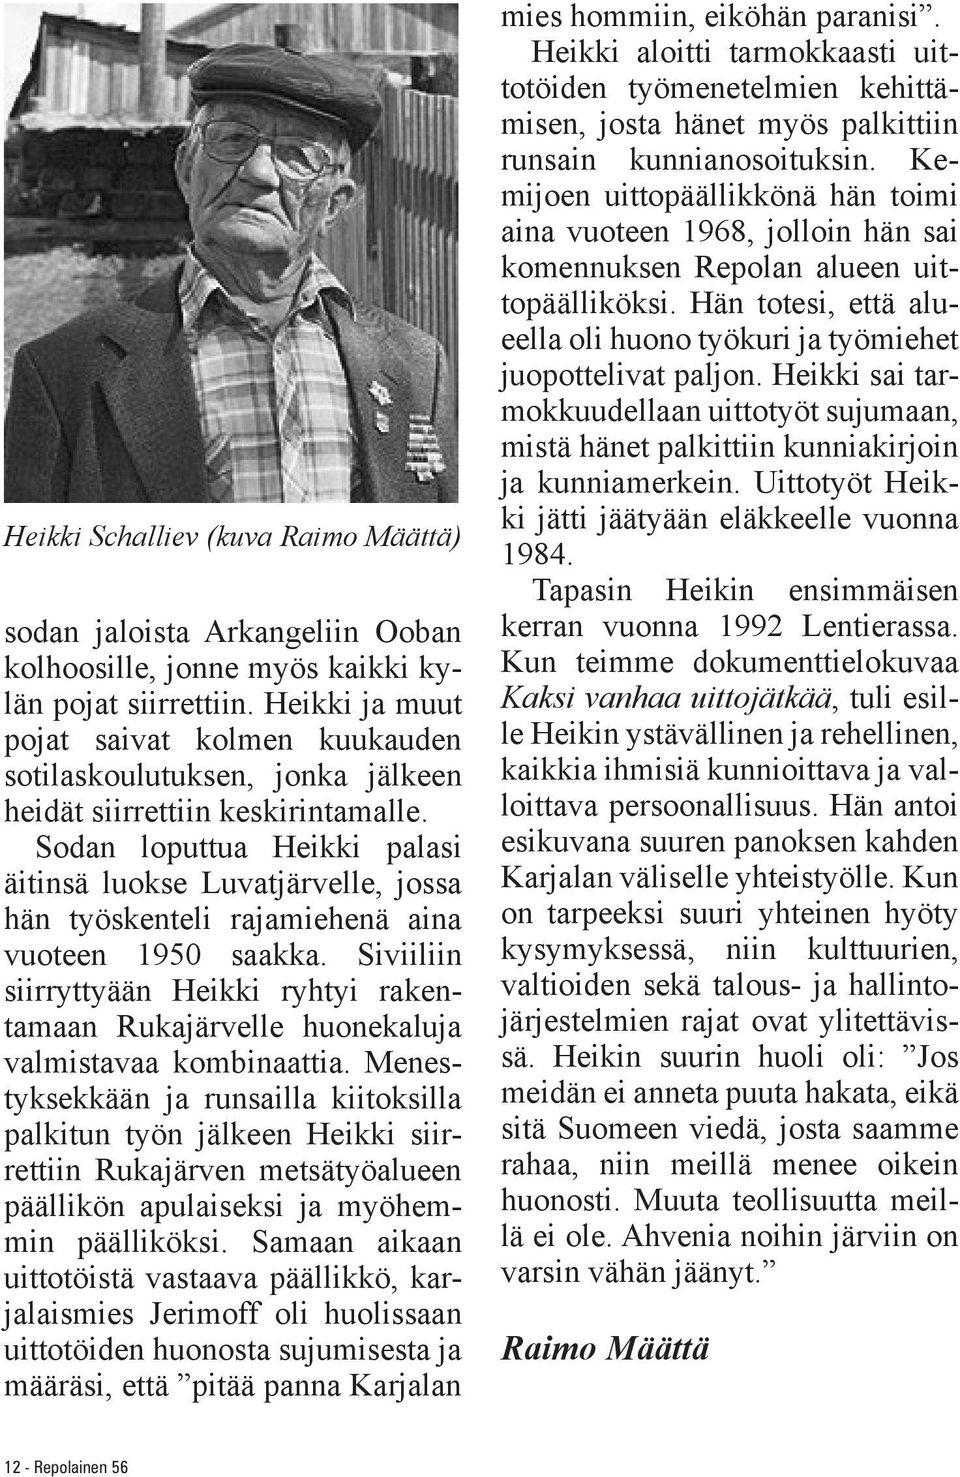 Sodan loputtua Heikki palasi äitinsä luokse Luvatjärvelle, jossa hän työskenteli rajamiehenä aina vuoteen 1950 saakka.